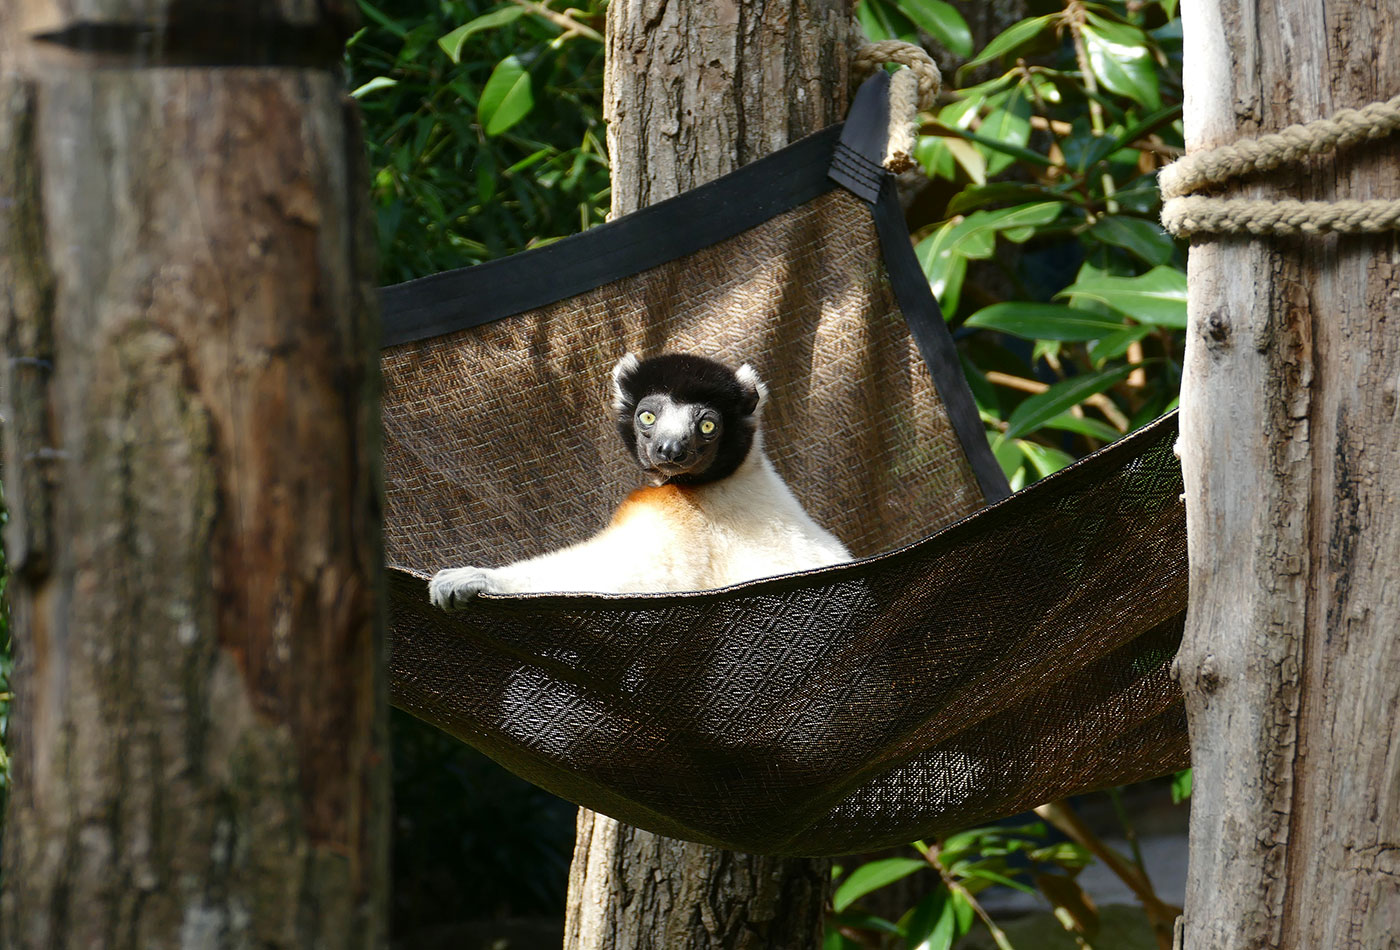 Der Zoo Heidelberg freut sich auf ein neues Zoo-Jahr: Unter anderem wird Kronensifaka Jao einen neuen männlichen Artgenossen bekommen, der gemeinsam mit ihm in der Lemuren-WG leben soll. (Foto: Petra Medan/Zoo Heidelberg)